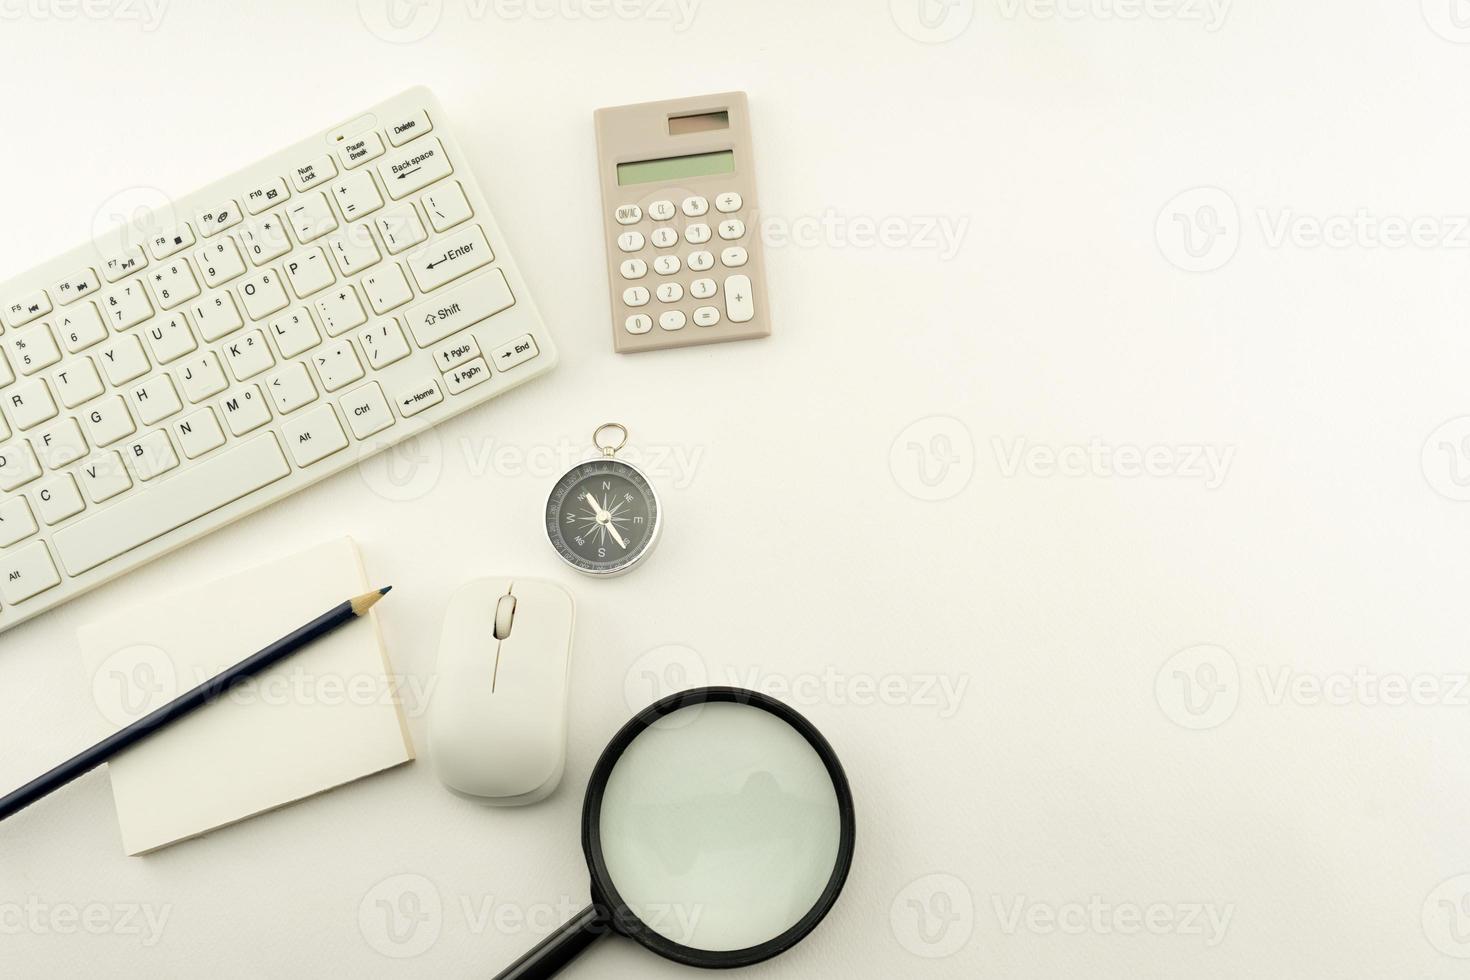 oggetti aziendali di pc, tastiera, mouse, matita, bussola e calcolatrice, lente d'ingrandimento su sfondo bianco tavolo. foto